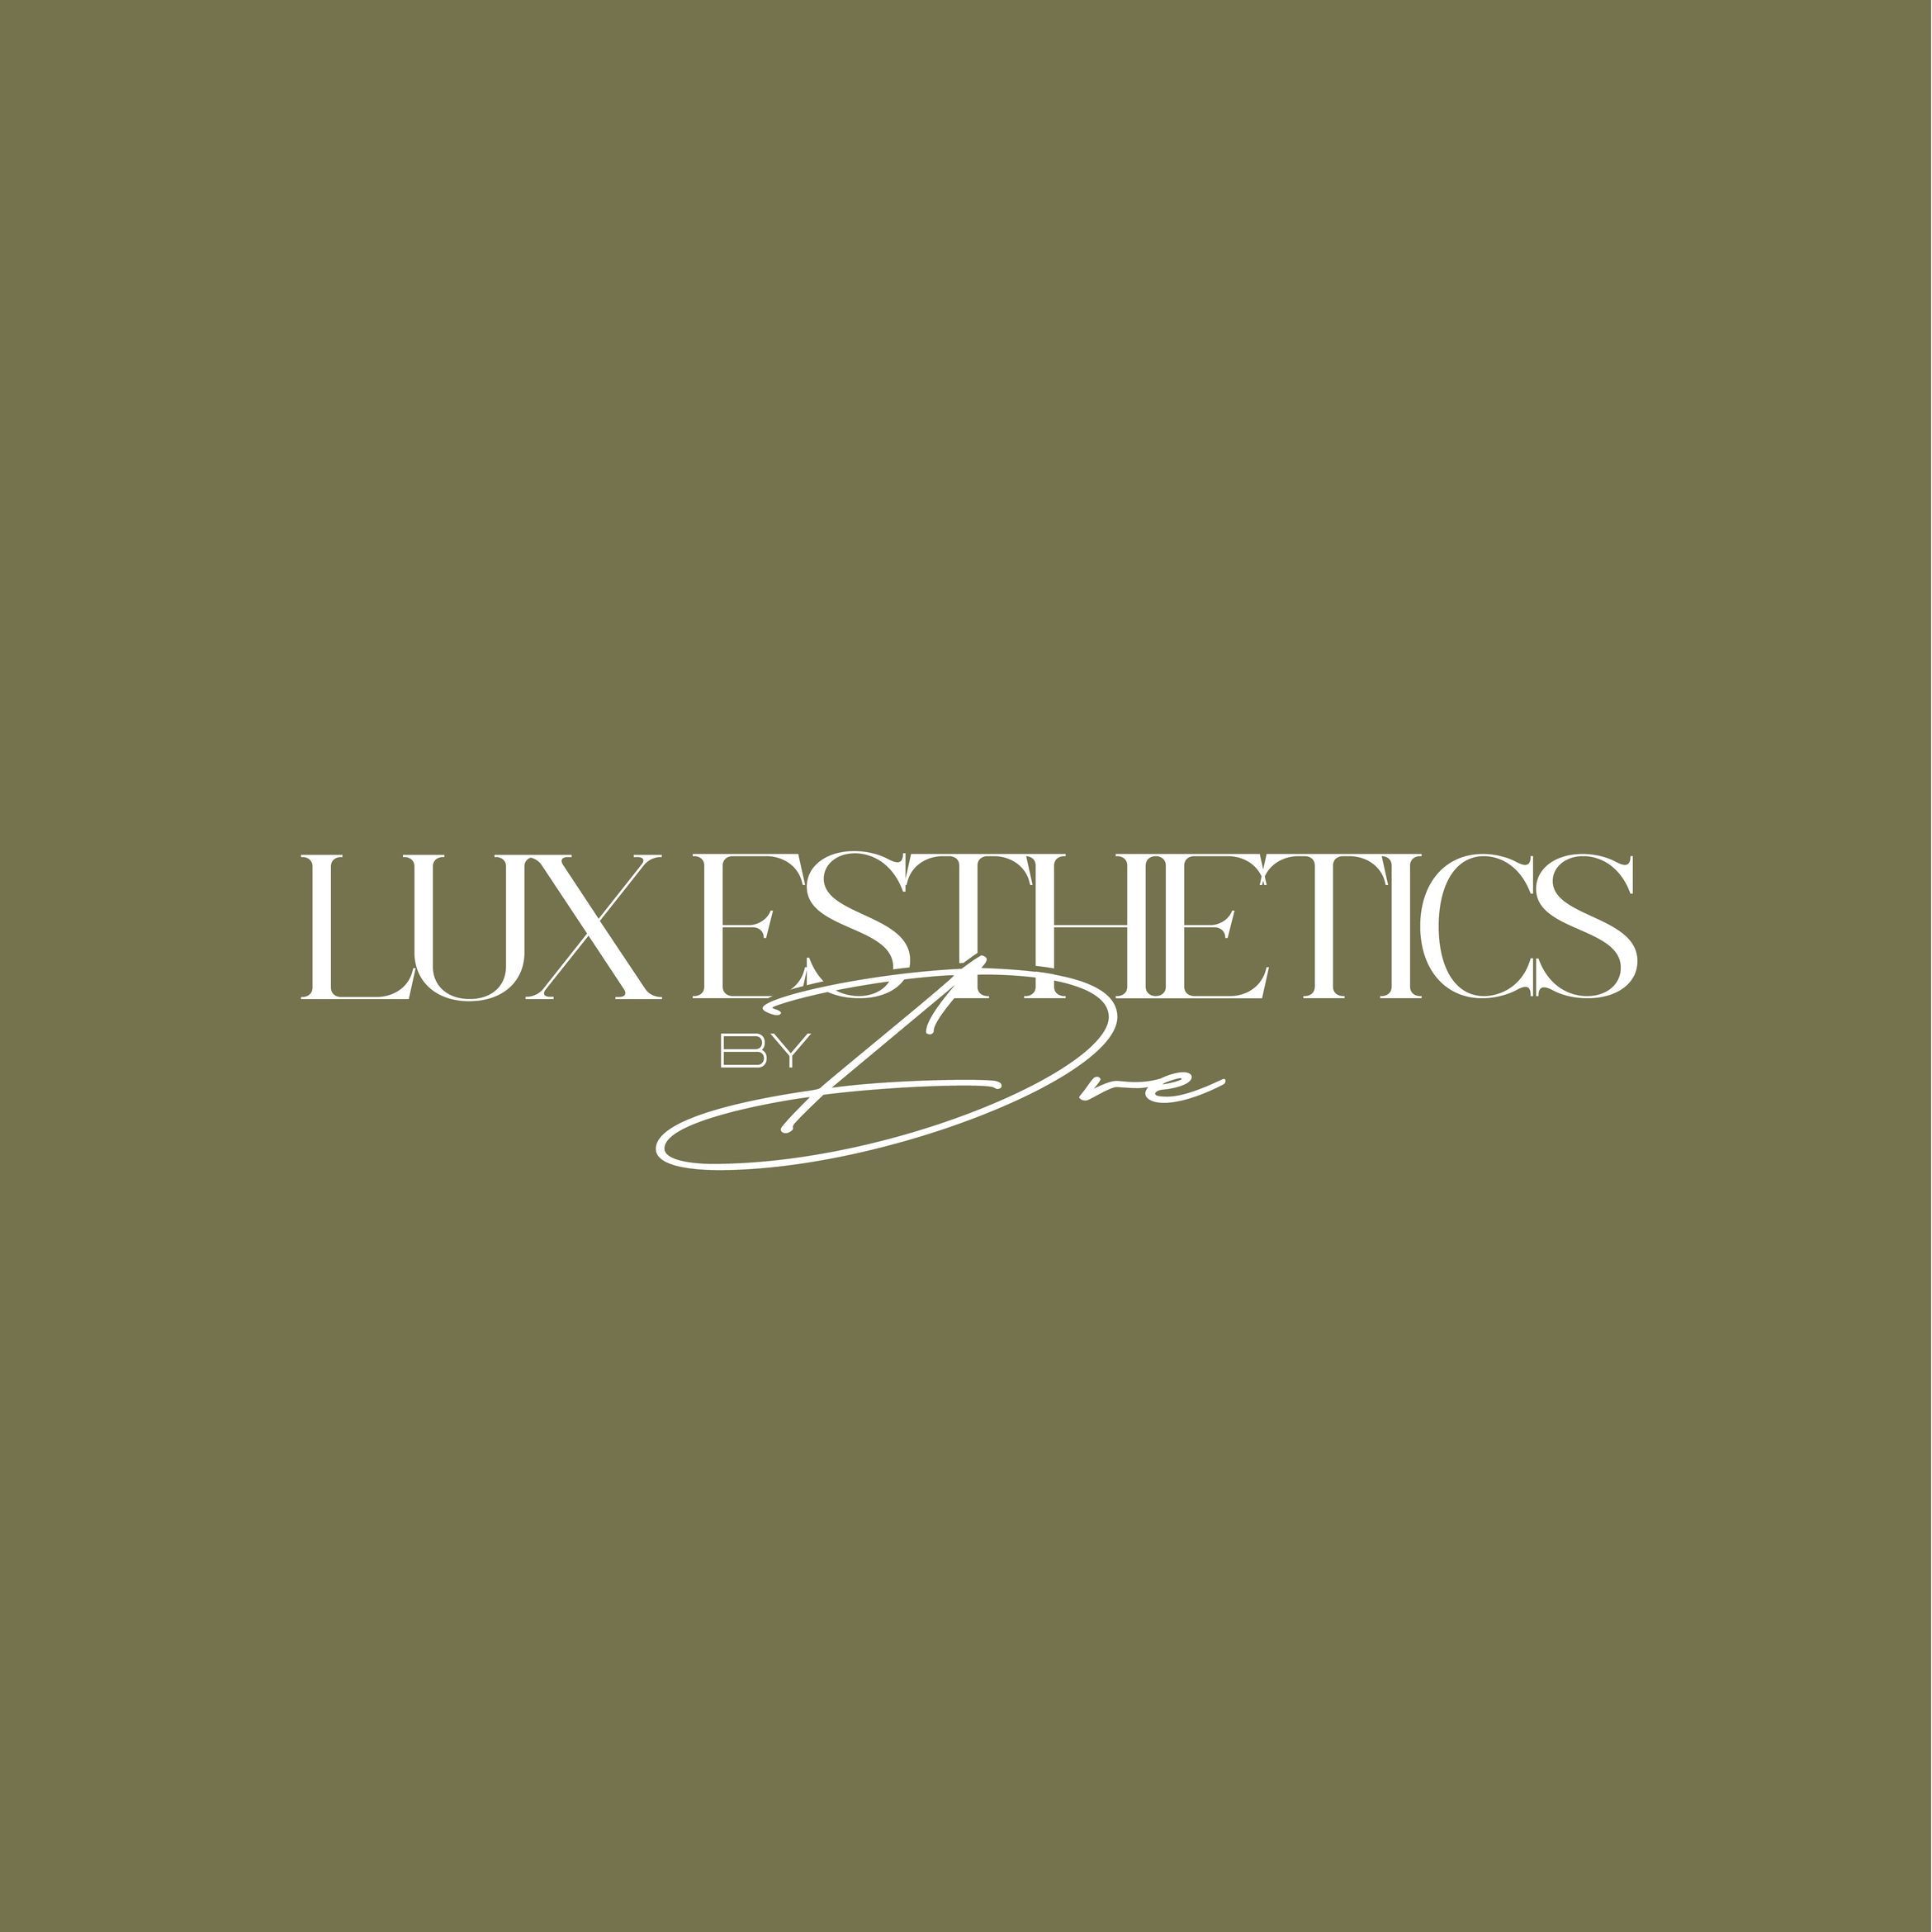 Lux Esthetics By Dre, 10255 Commerce Dr, 224, Carmel, 46032